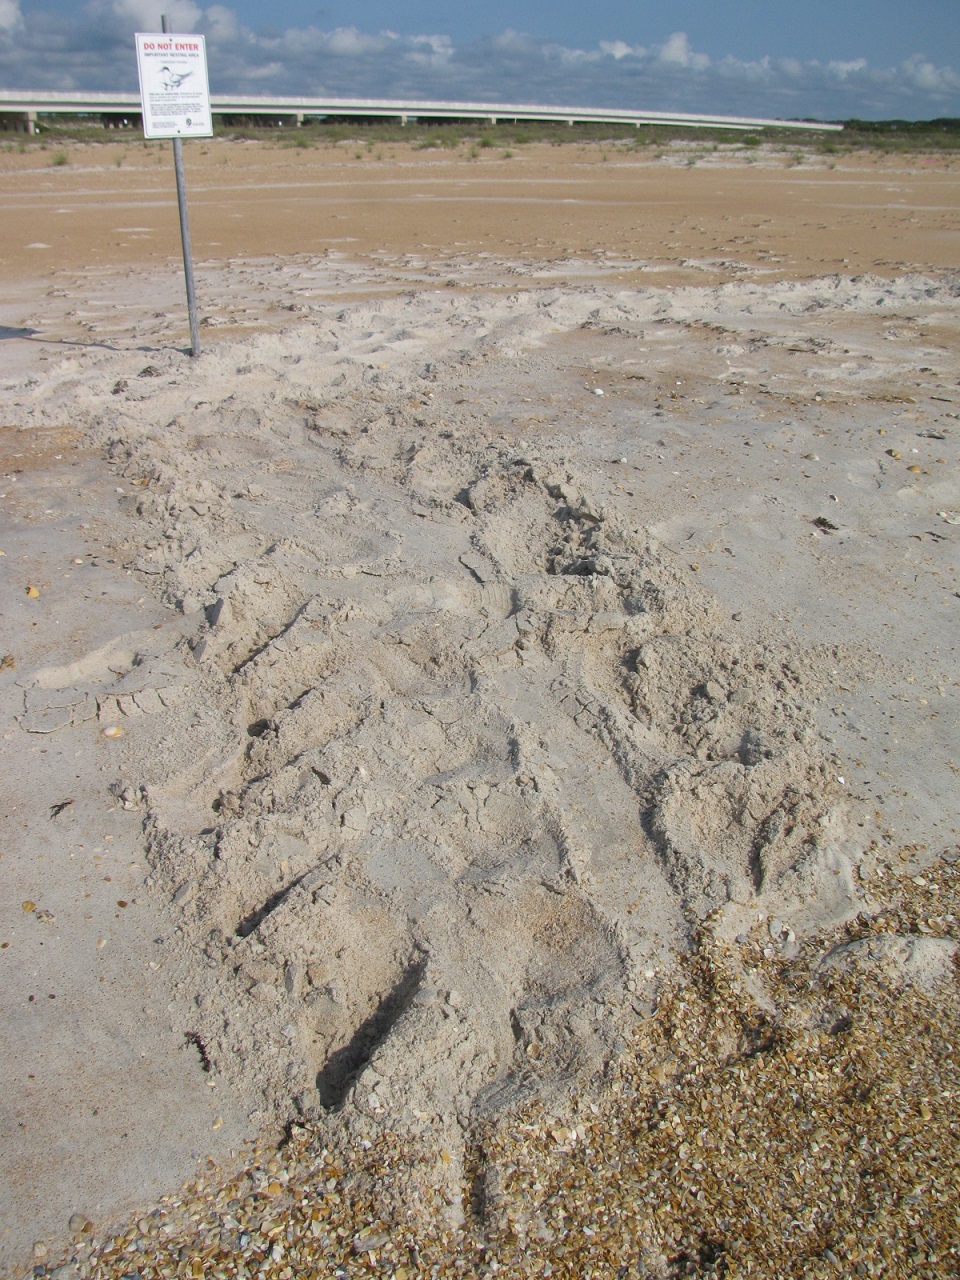 Sea turtle tracks